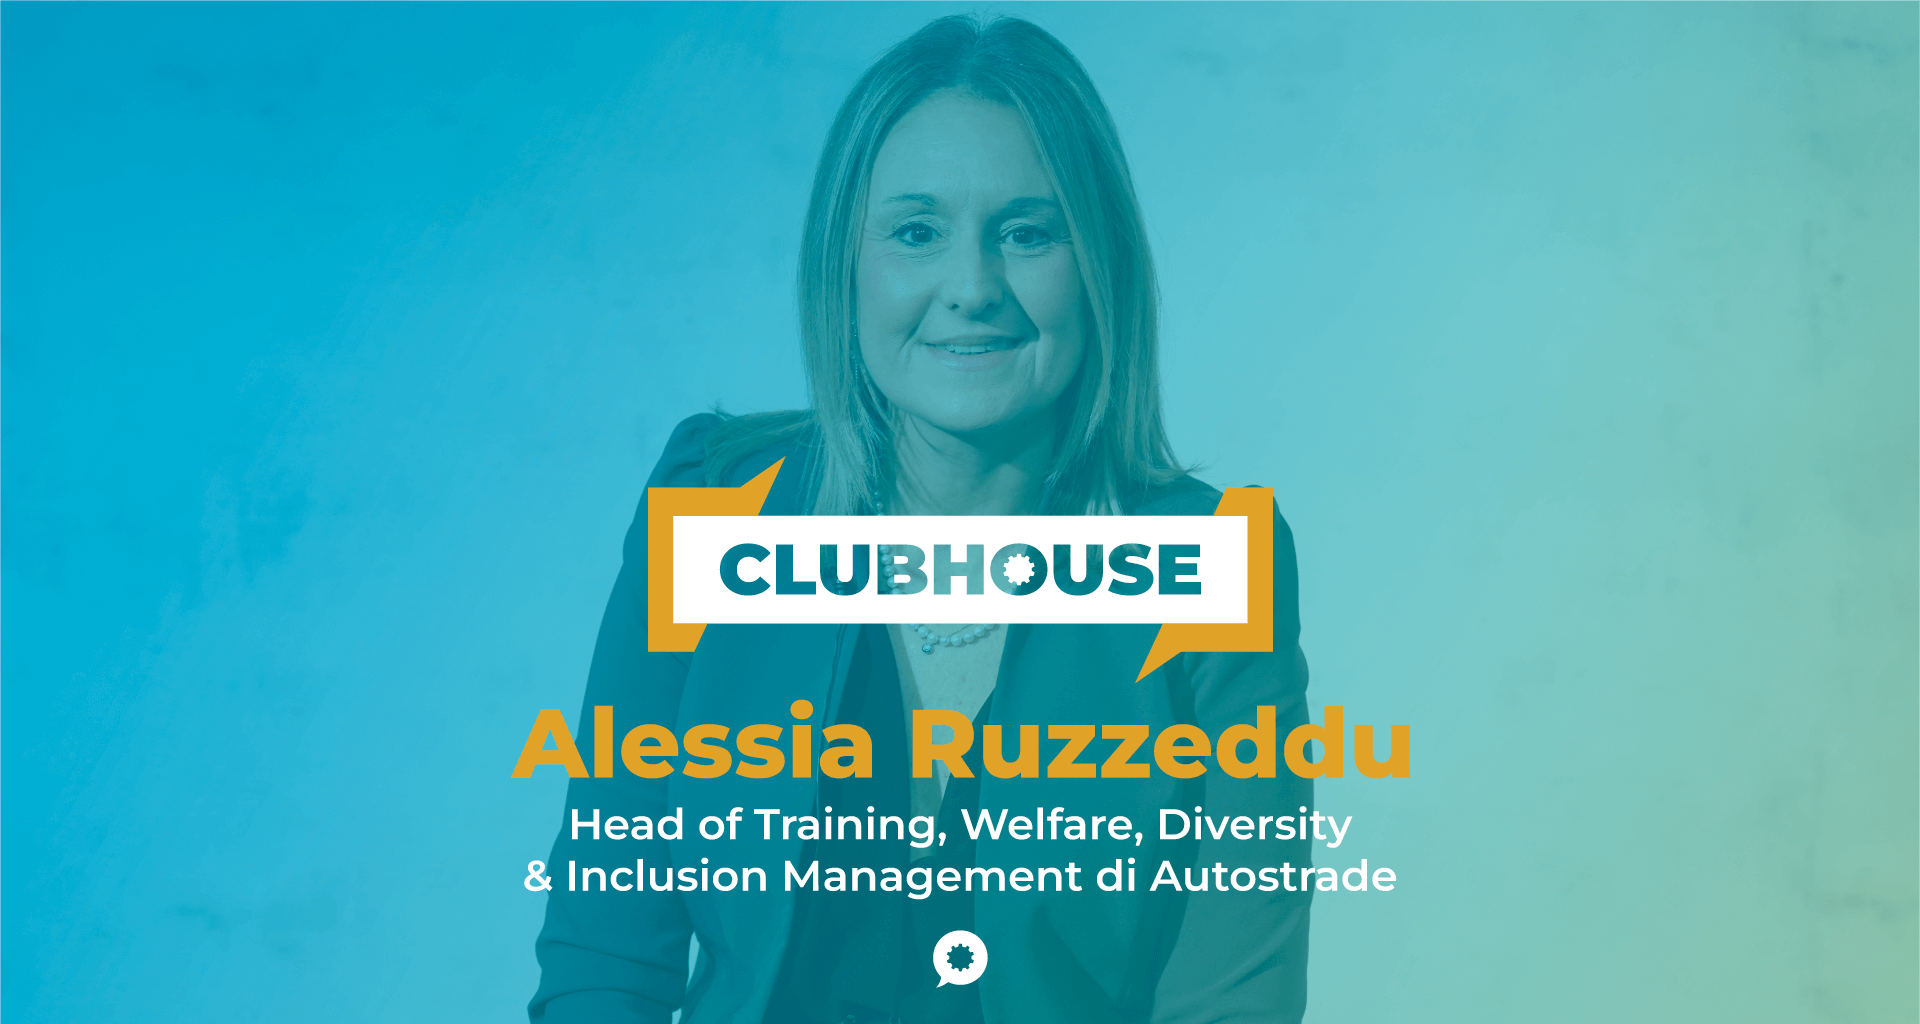 img 1: “Alessia Ruzzeddu di Autostrade per l’Italia, ospite del ClubHouse di laborability”